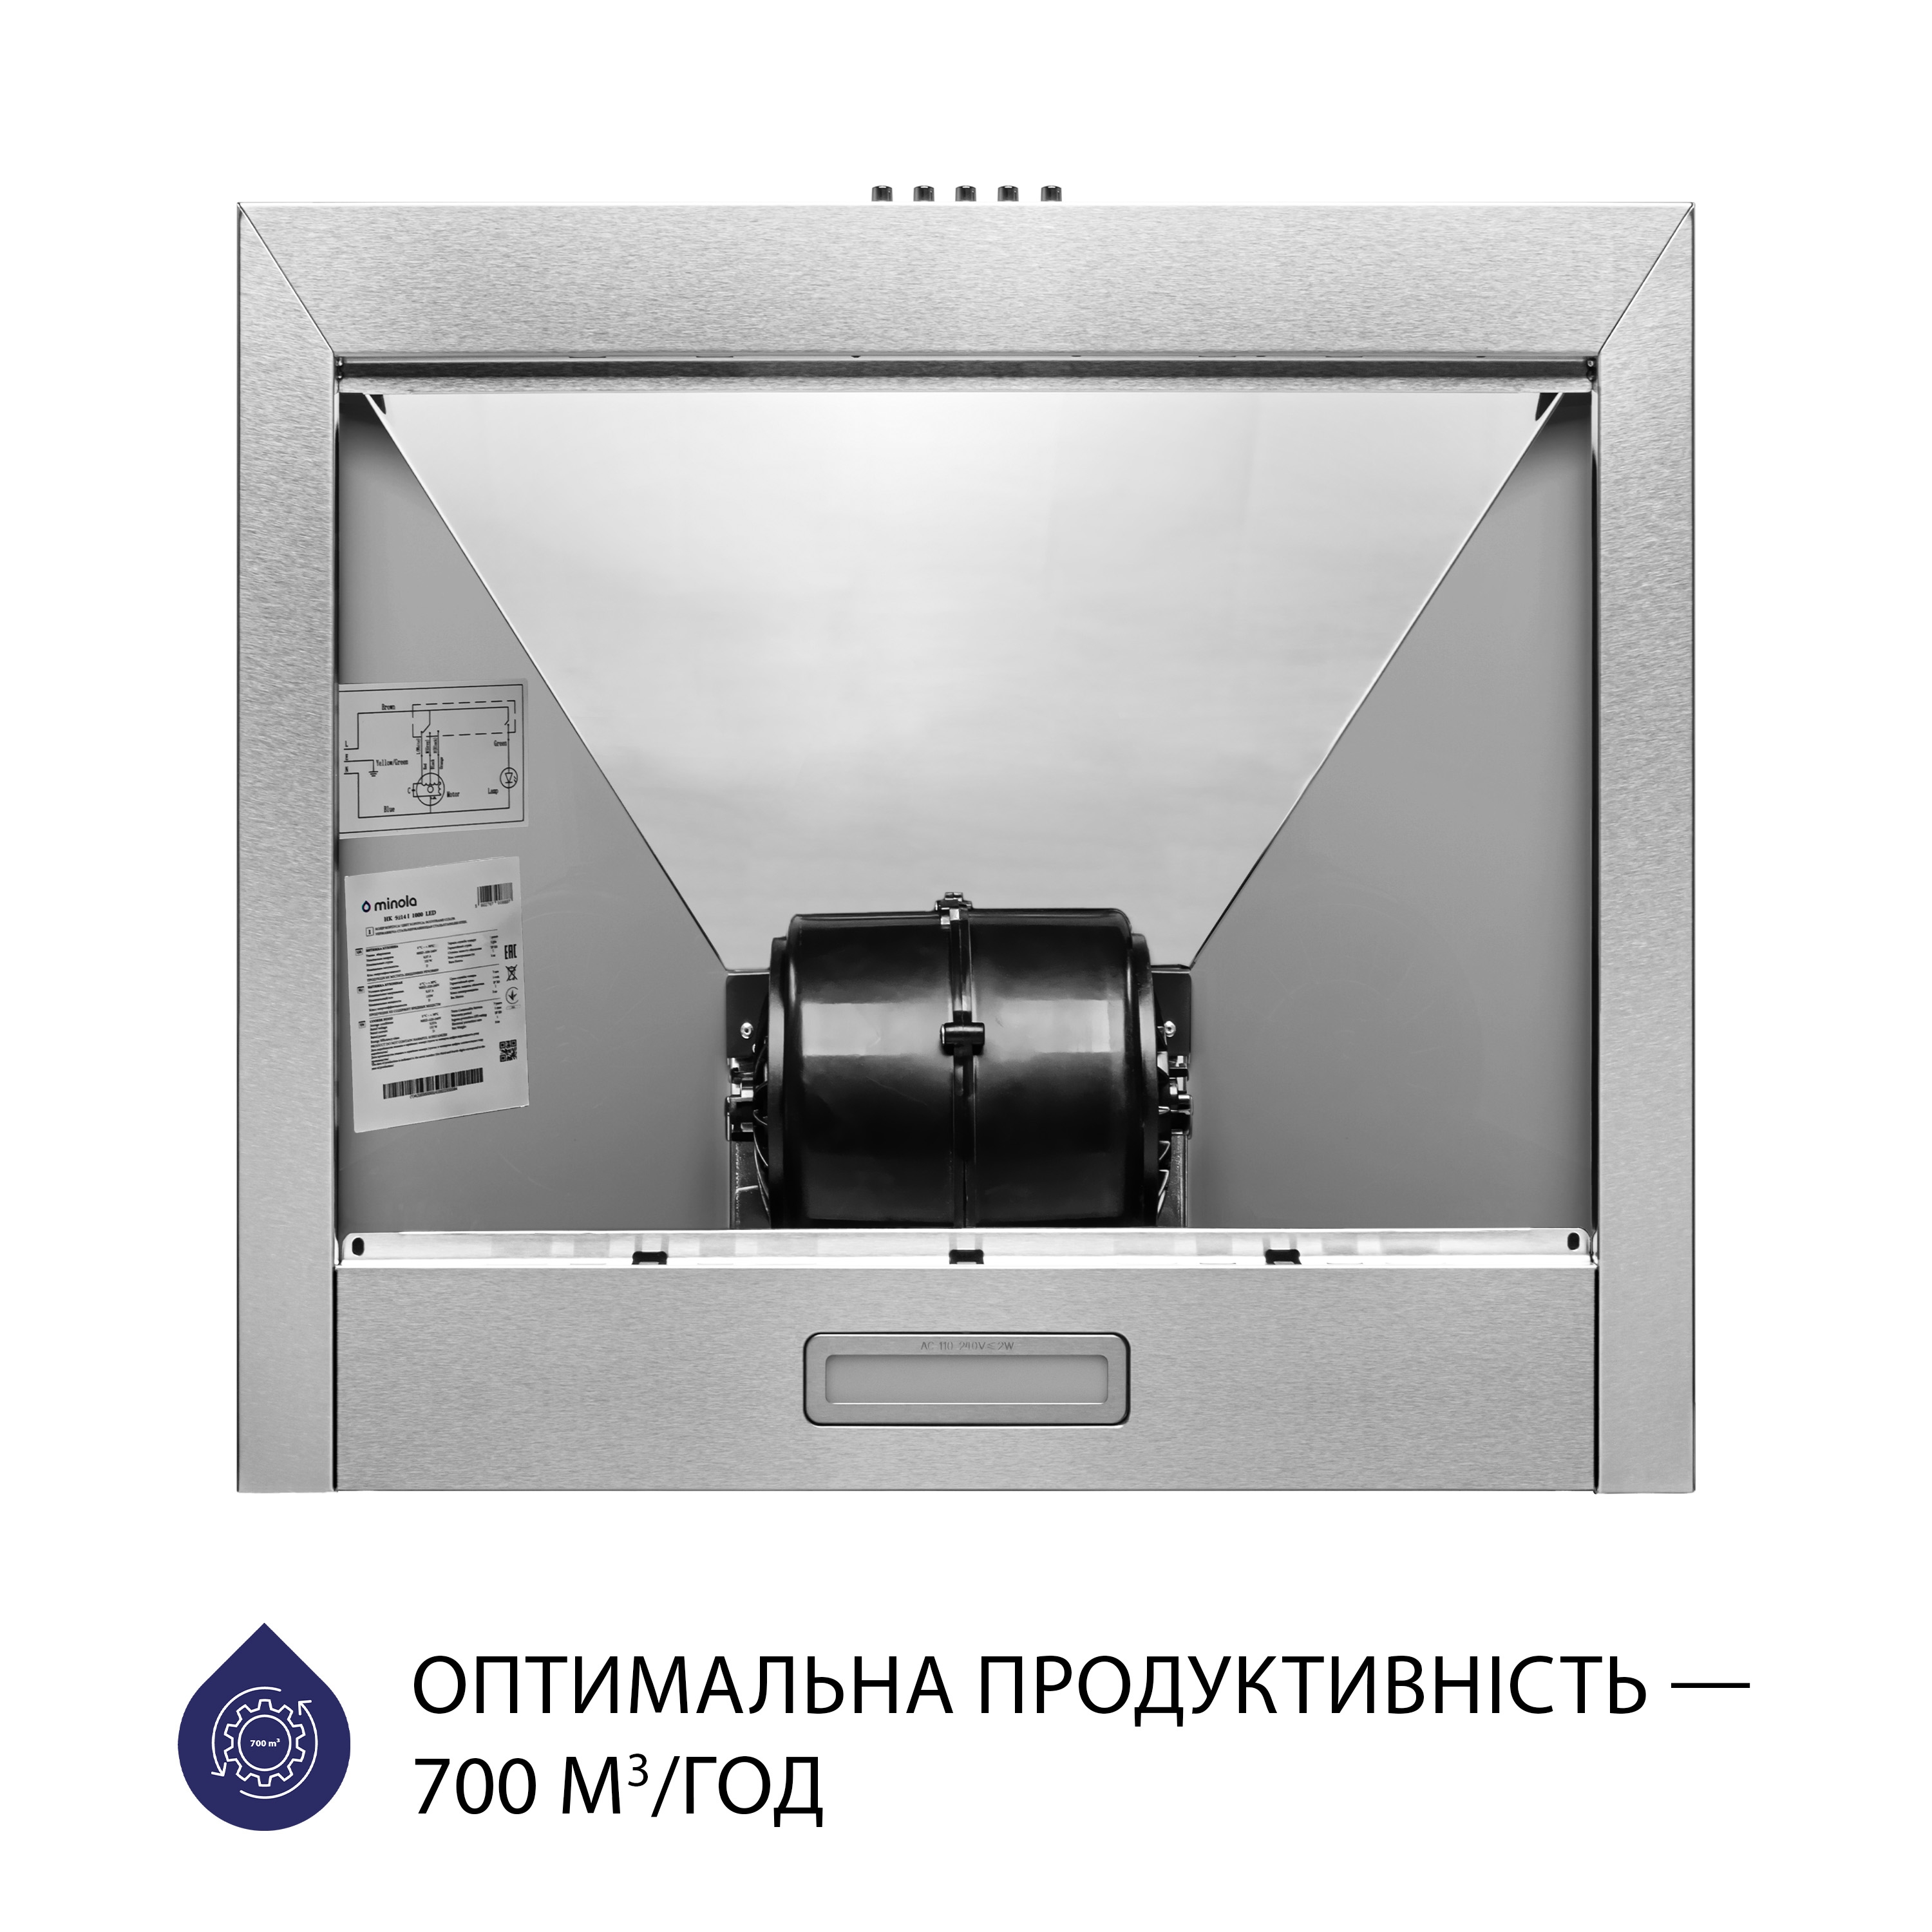 Витяжка кухонная купольная Minola HK 5214 I 700 LED инструкция - изображение 6